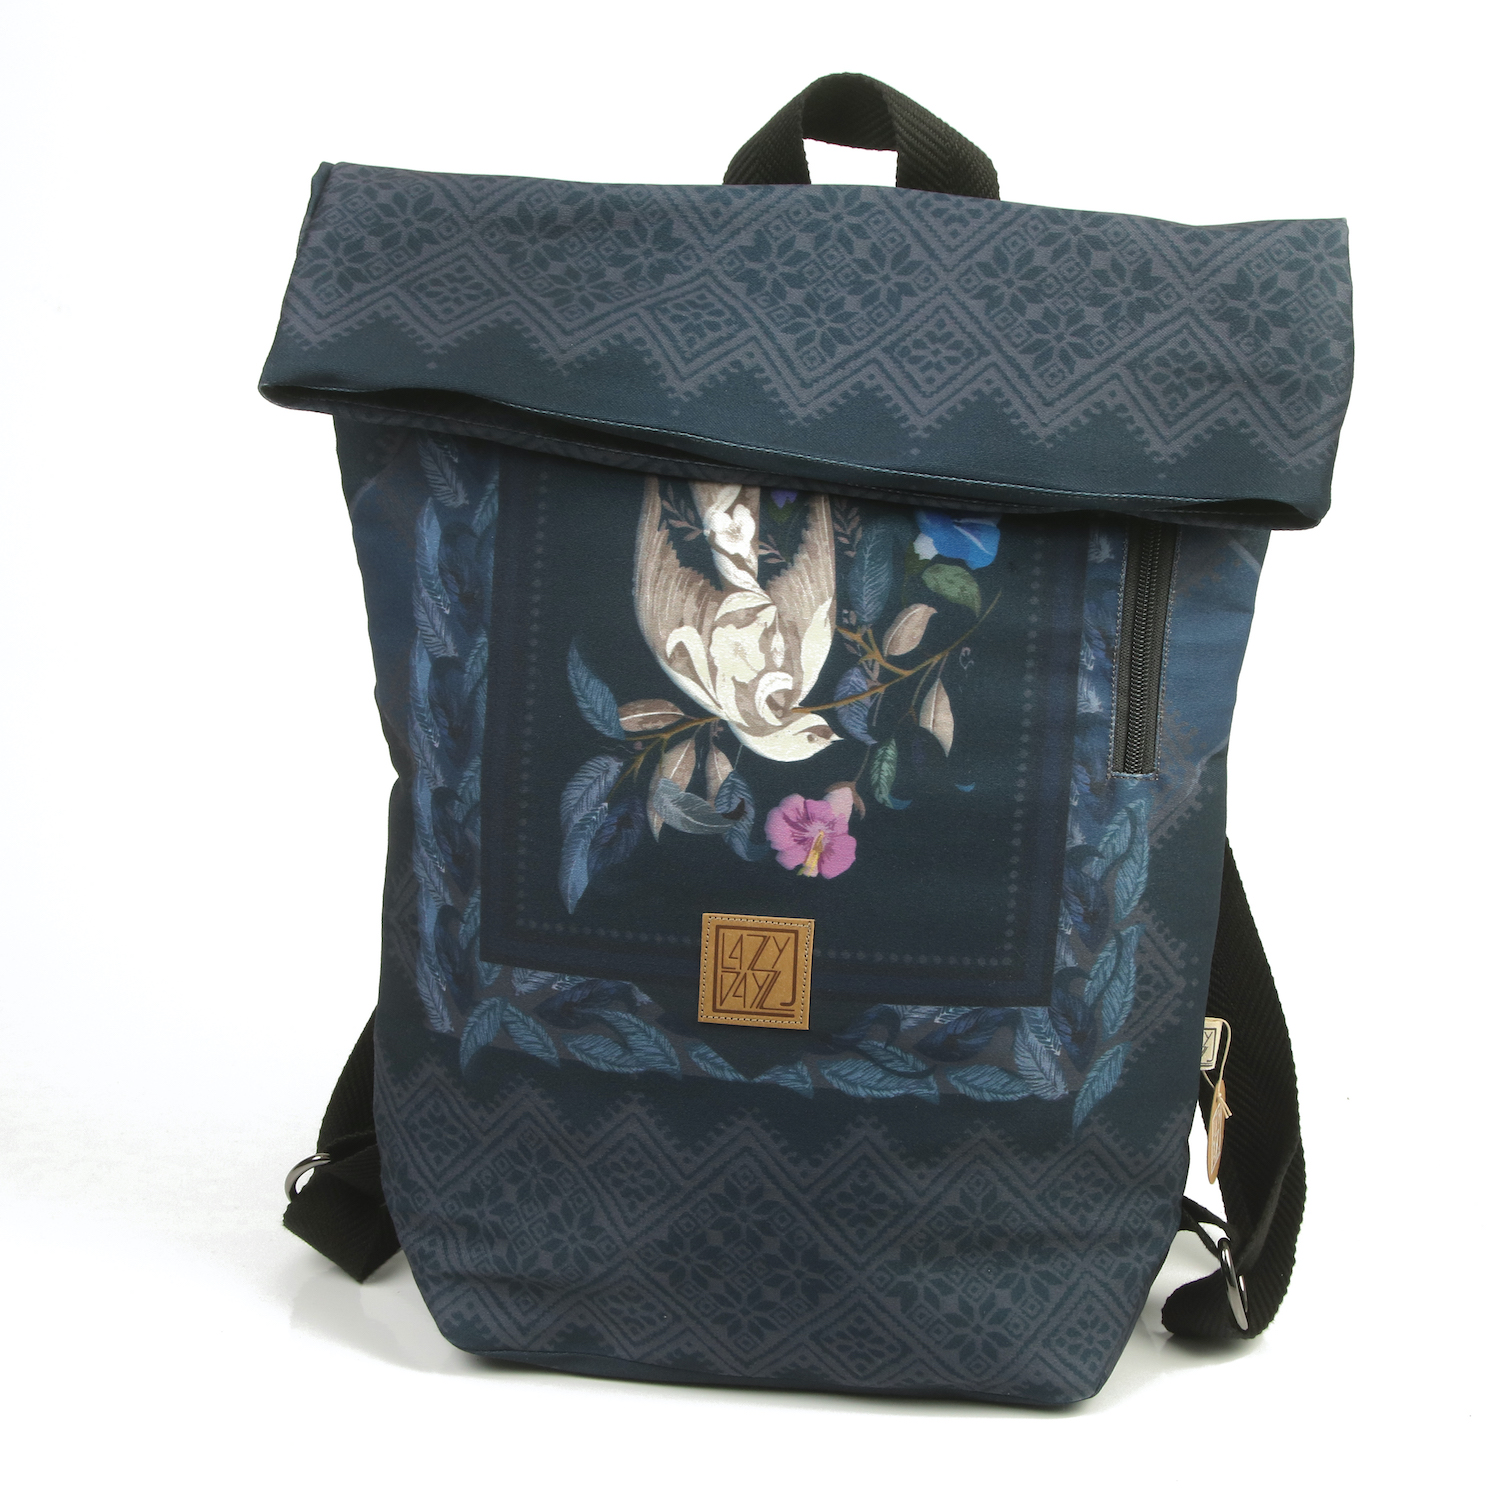 LazyDayz Designs Backpack γυναικείος σάκος πλάτης χειροποίητος bb0801